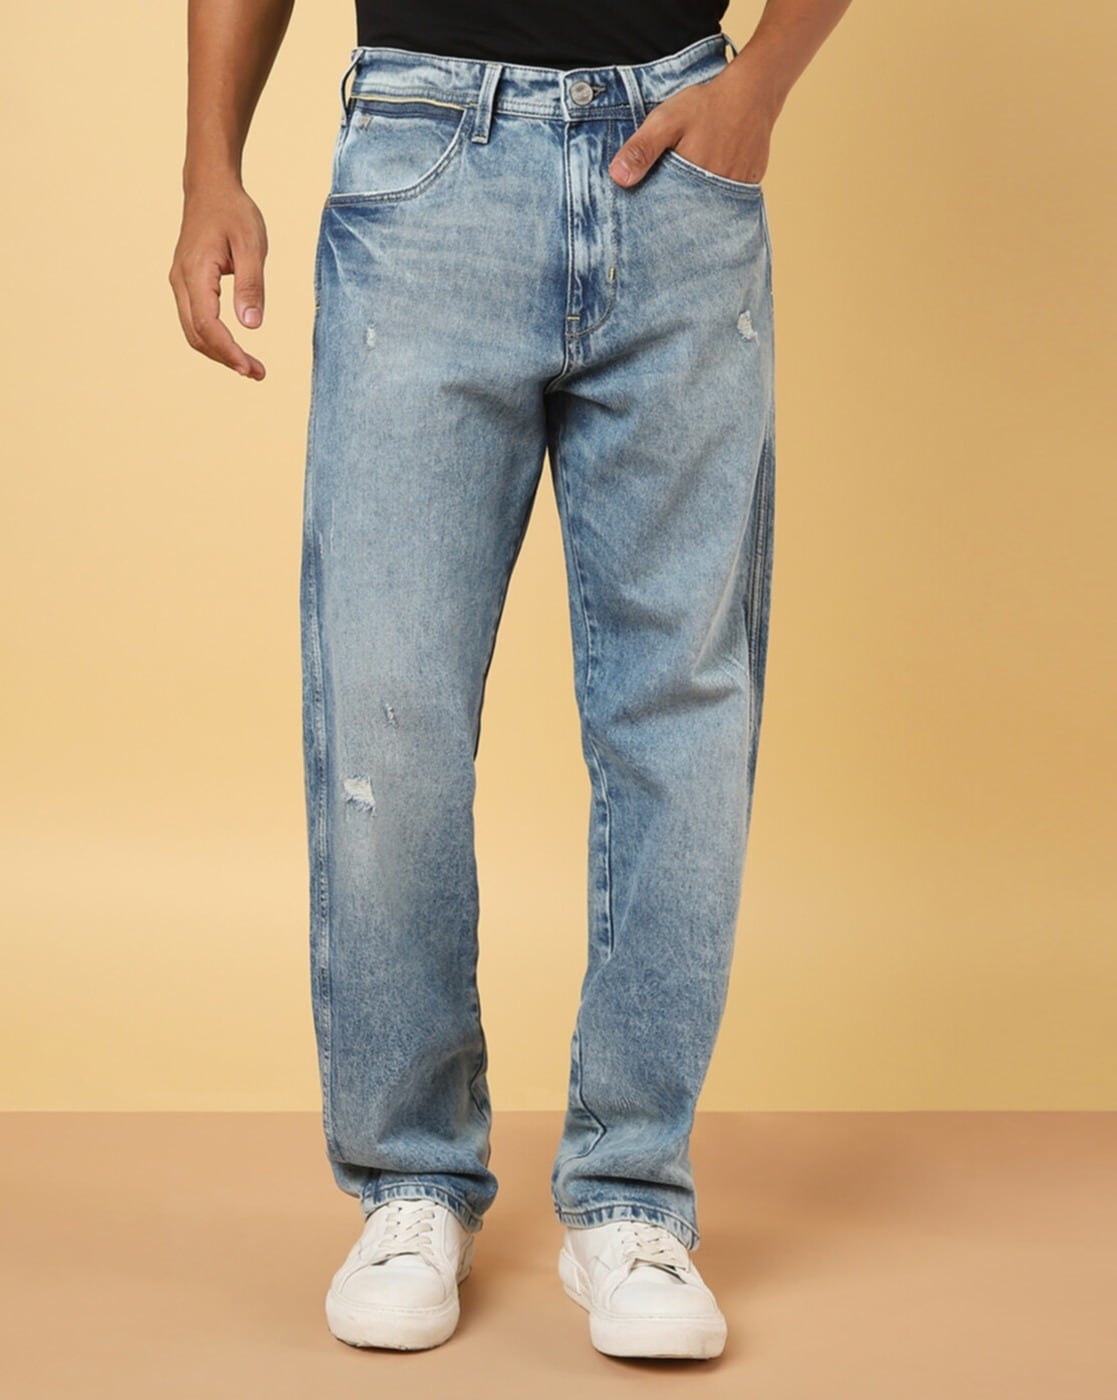 Buy Blue Jeans for Men by WRANGLER Online